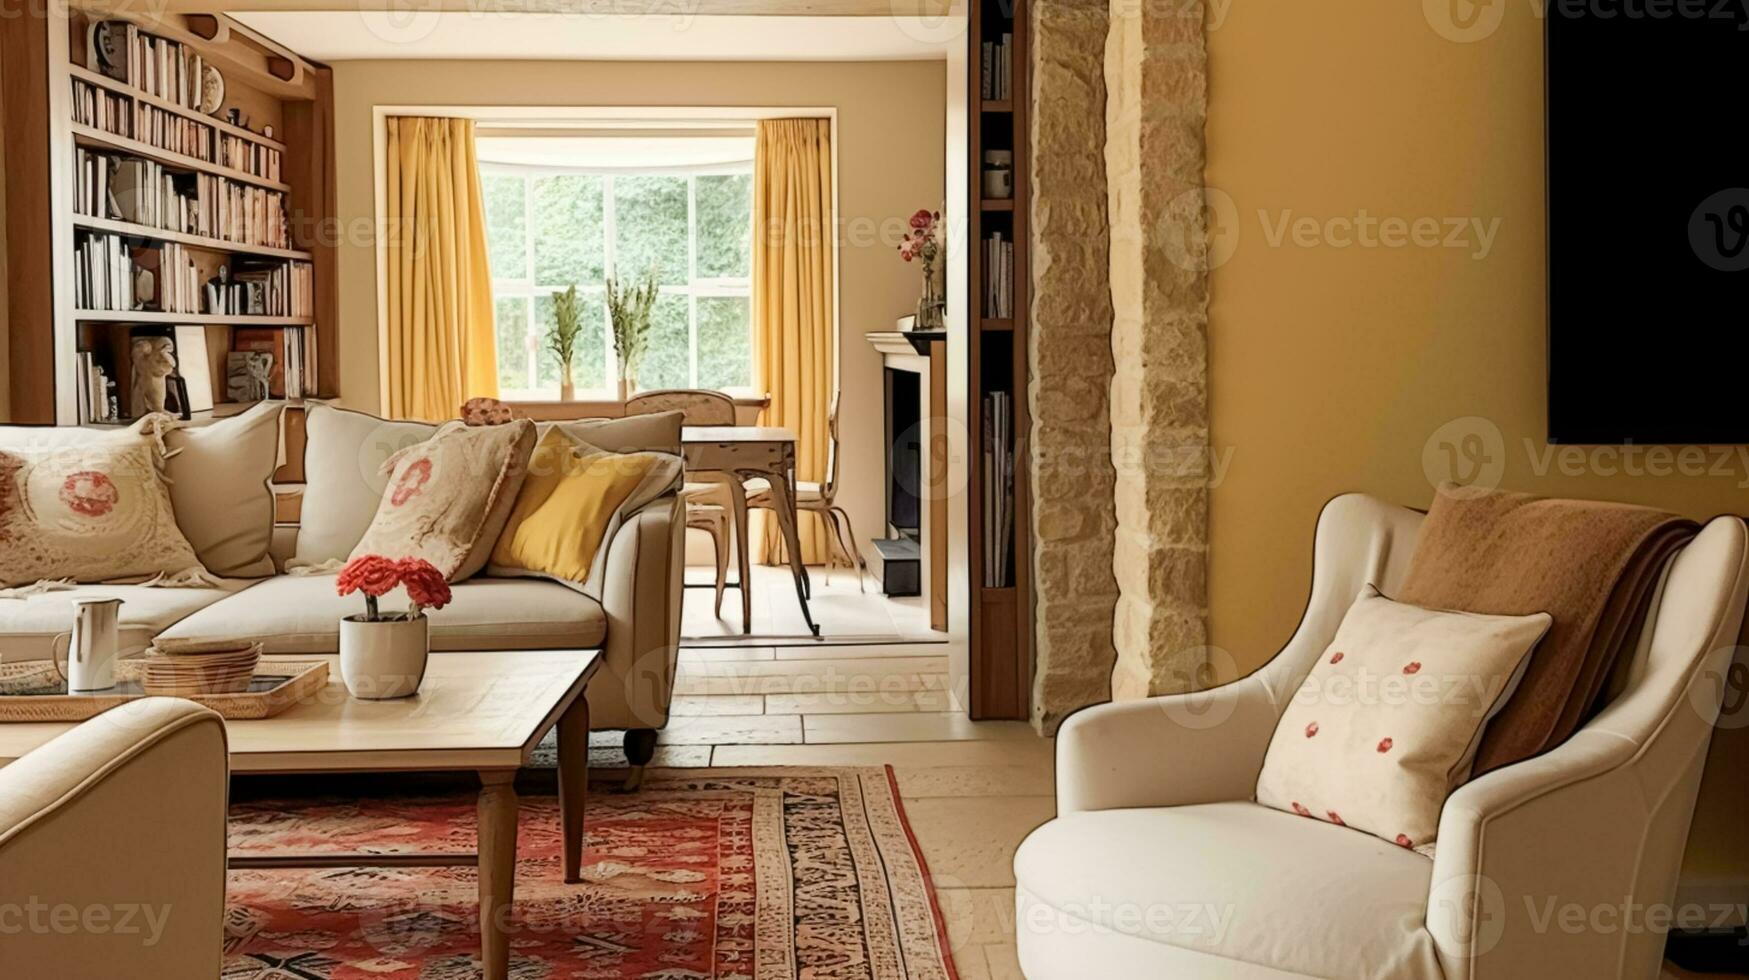 gul stuga Sammanträde rum, levande rum interiör design och Land hus Hem dekor, soffa och vardagsrum möbel, engelsk landsbygden stil foto